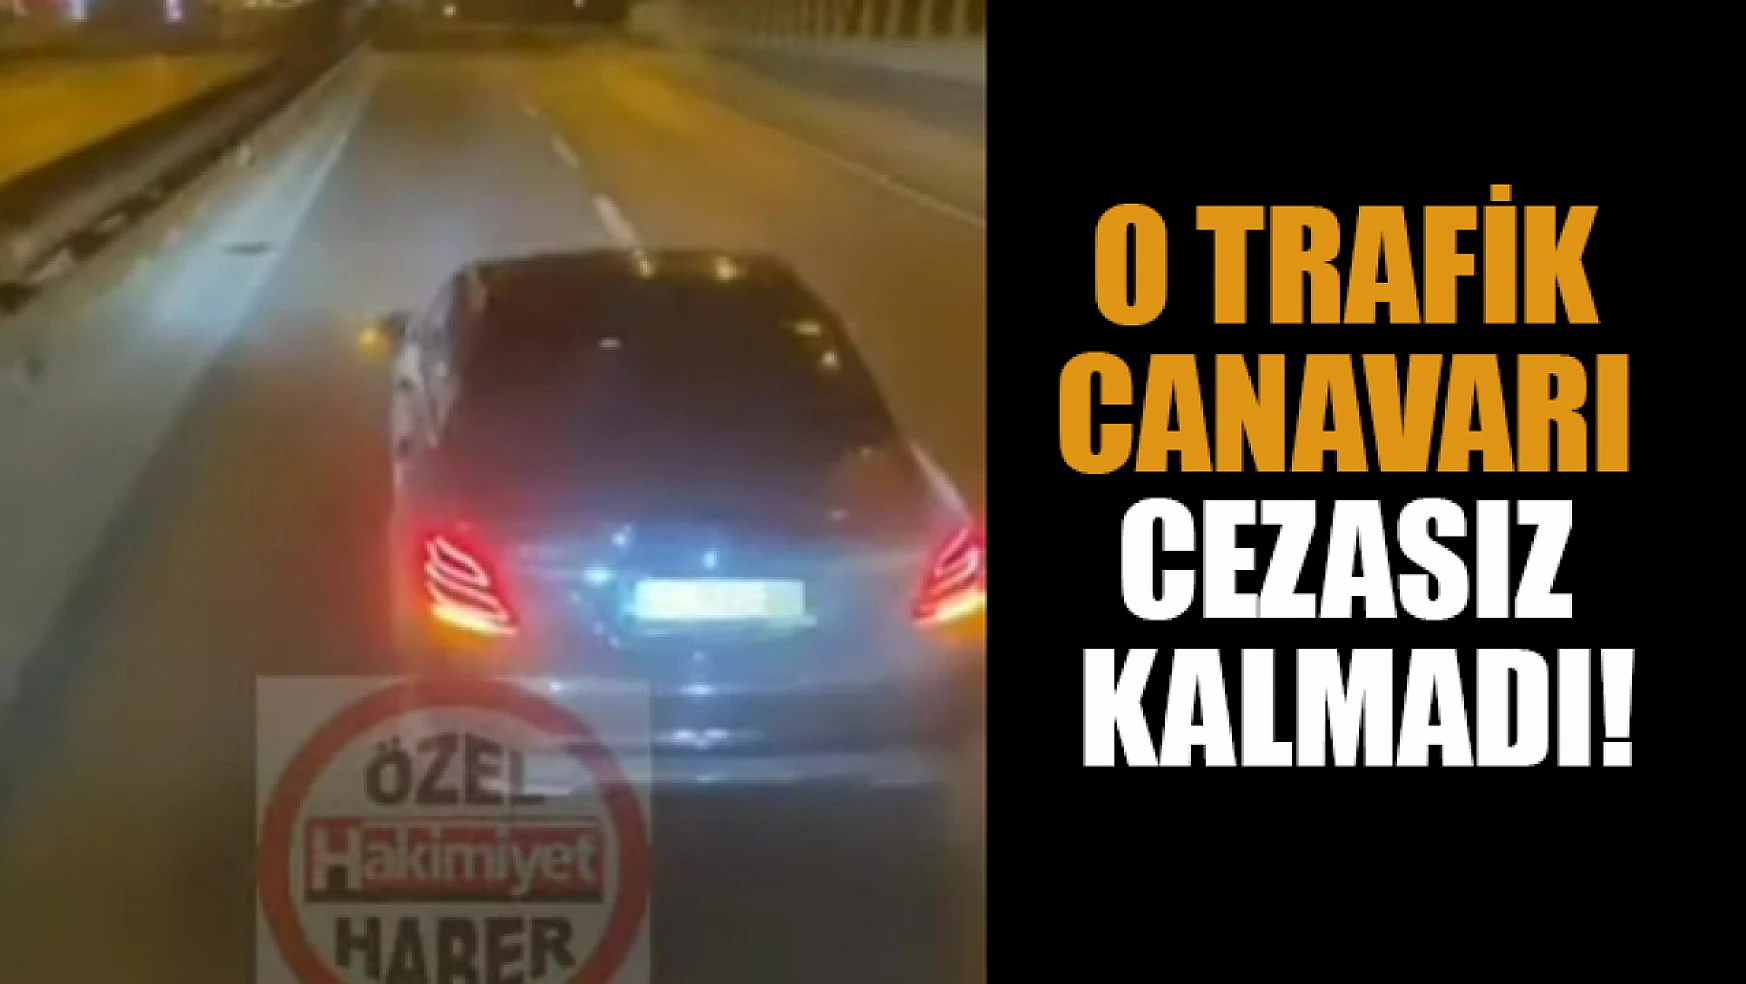  Konya'da o trafik canavarı cezasız kalmadı